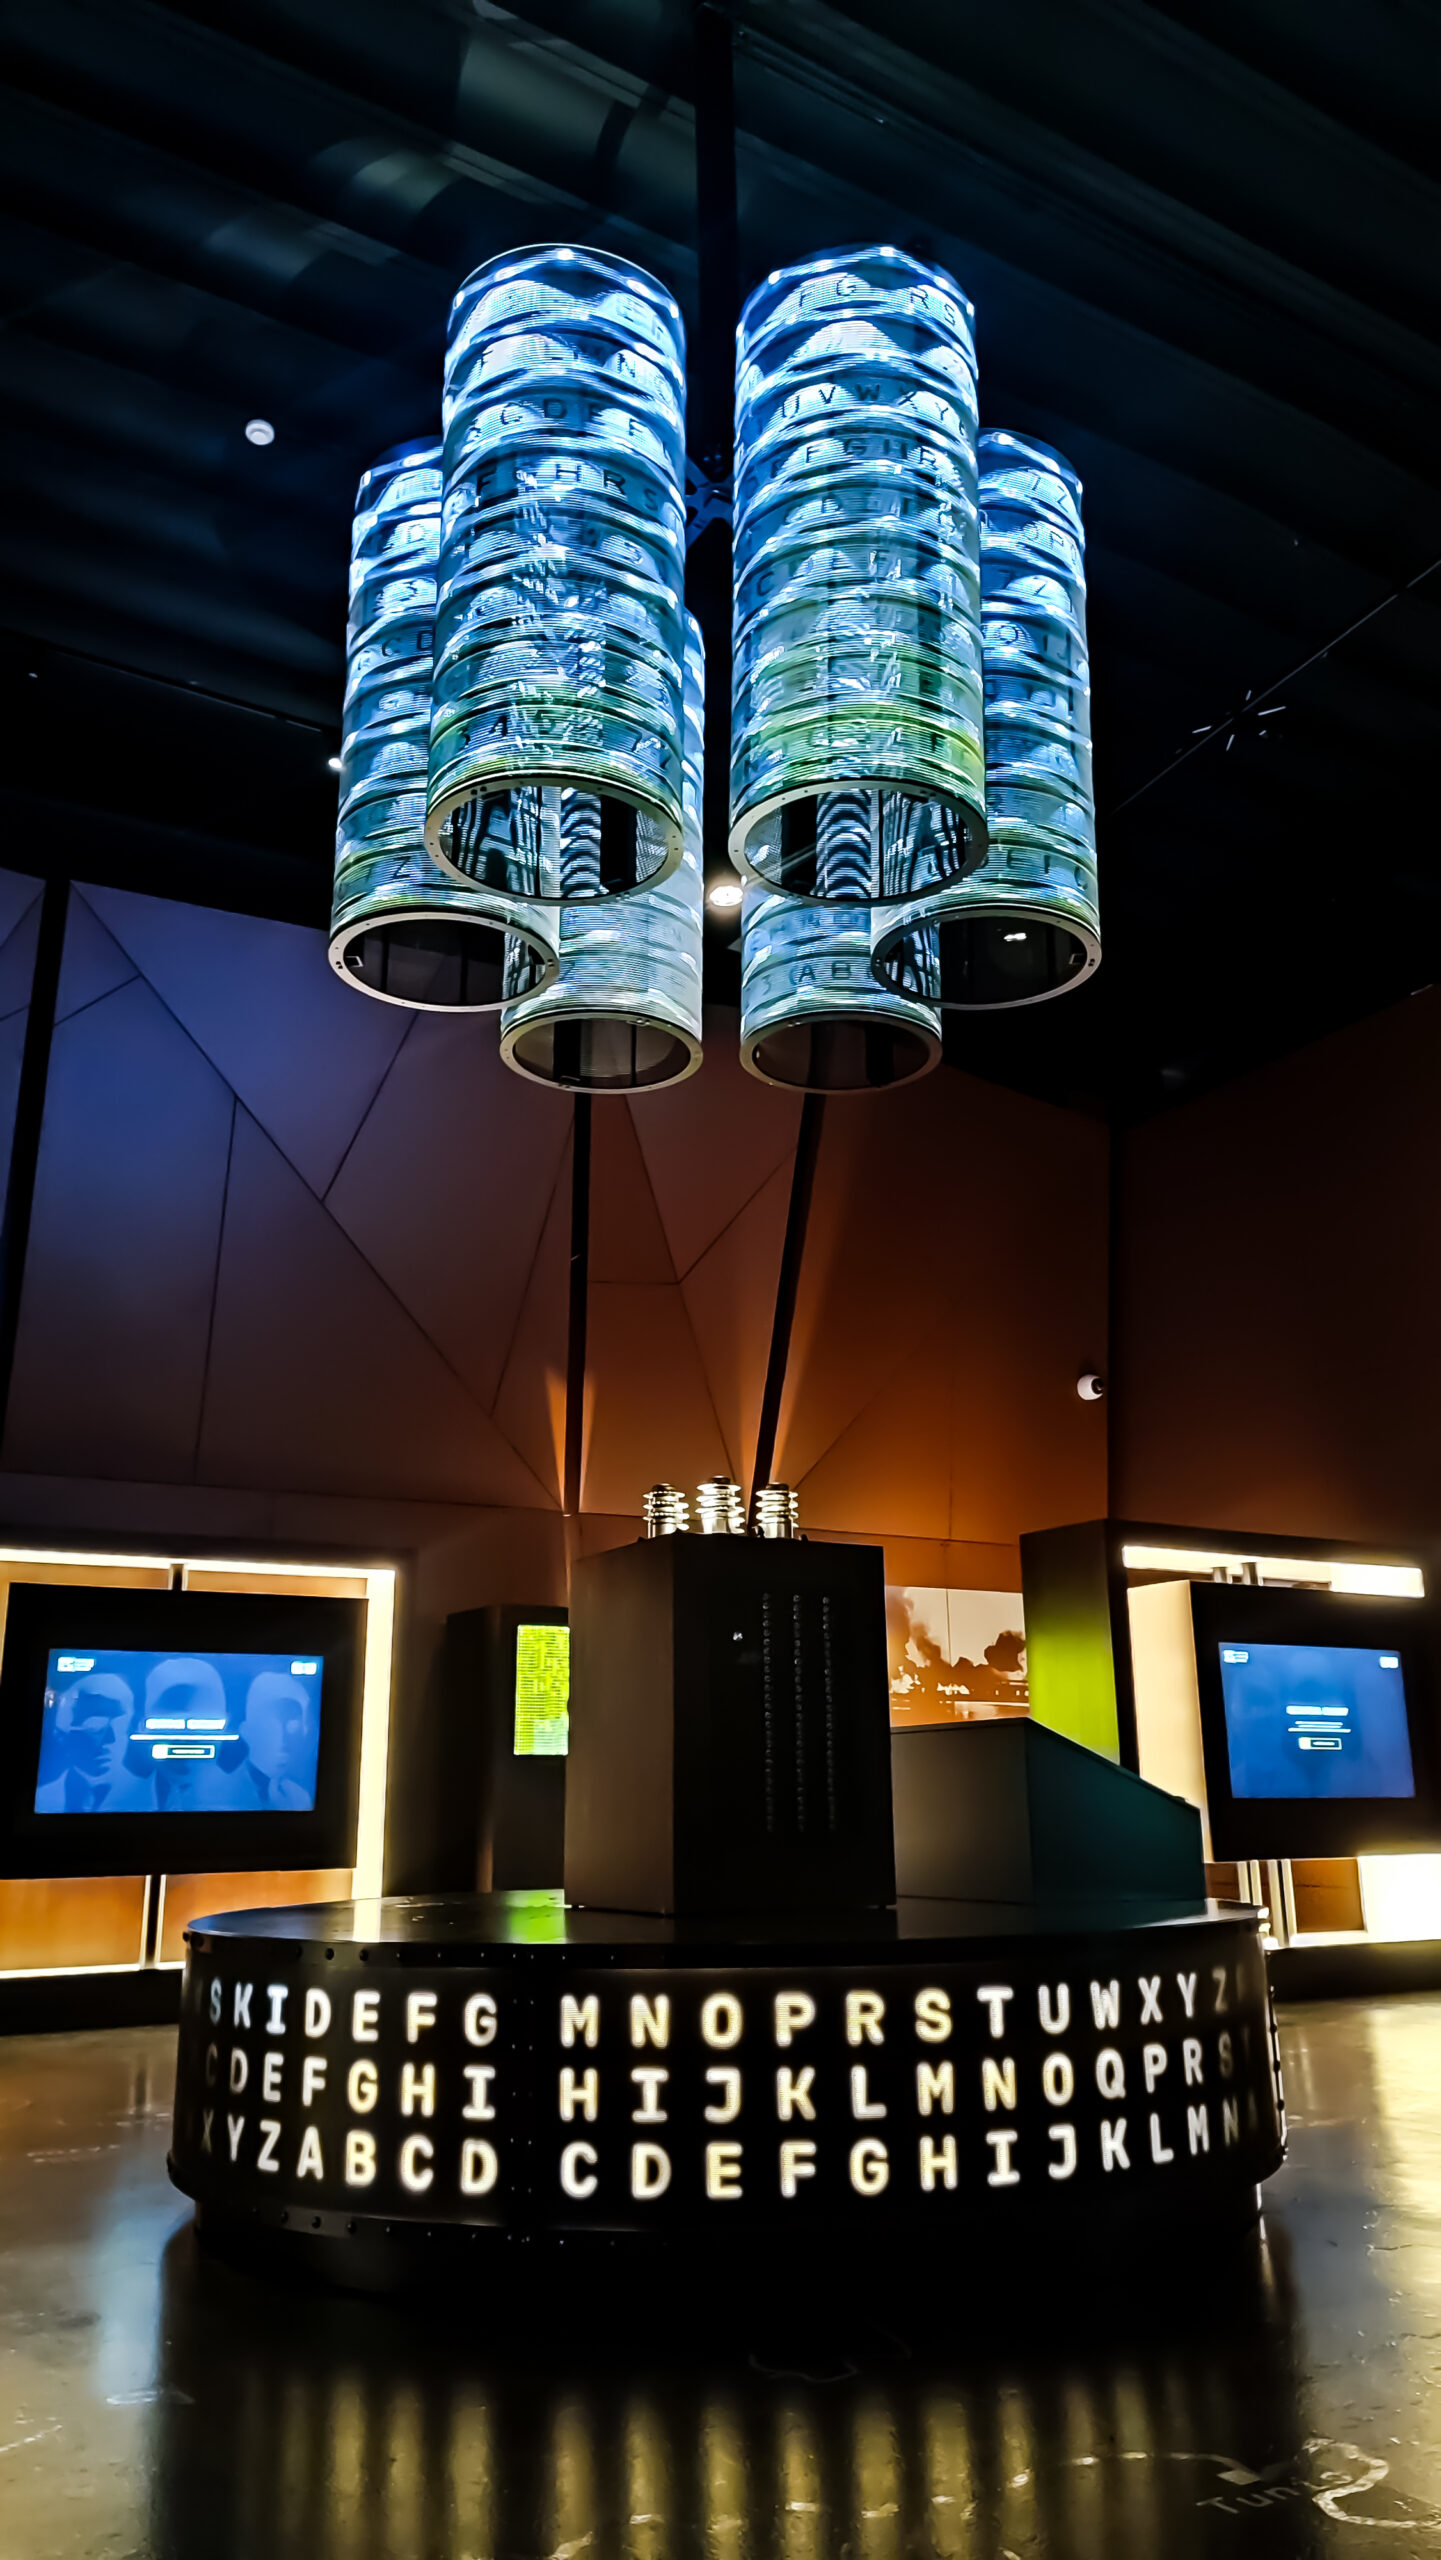 Podwieszane ekrany LedLIGHT w formie transparentnych cylindrów umieszone w Centrum Szyfrów Enigma w Poznaniu